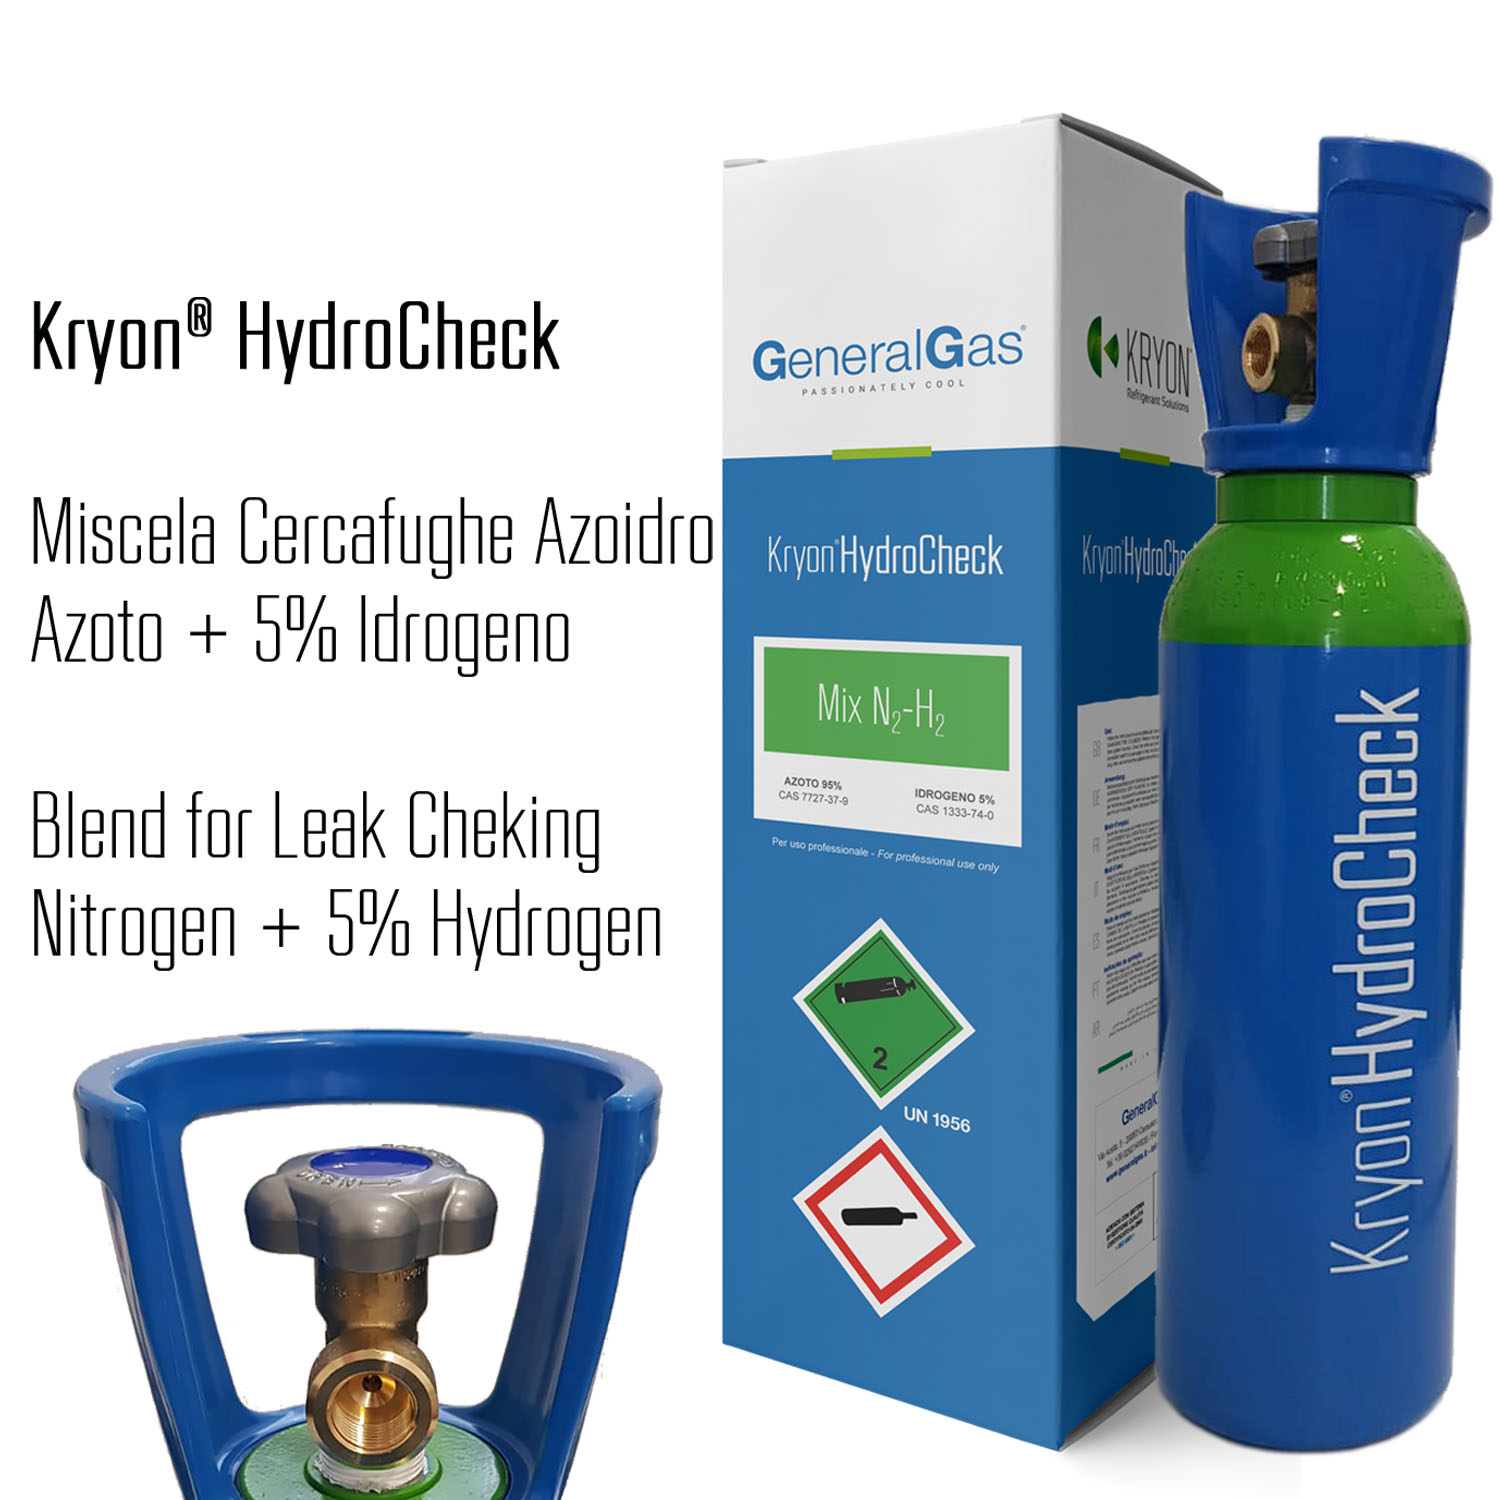 Kryon® HydroCheck - bombola azoto 5% idrogeno (miscela cercafughe azoidro) capacità 5 litri 200 bar - caricata con 1 mc di miscela, completa di valvola